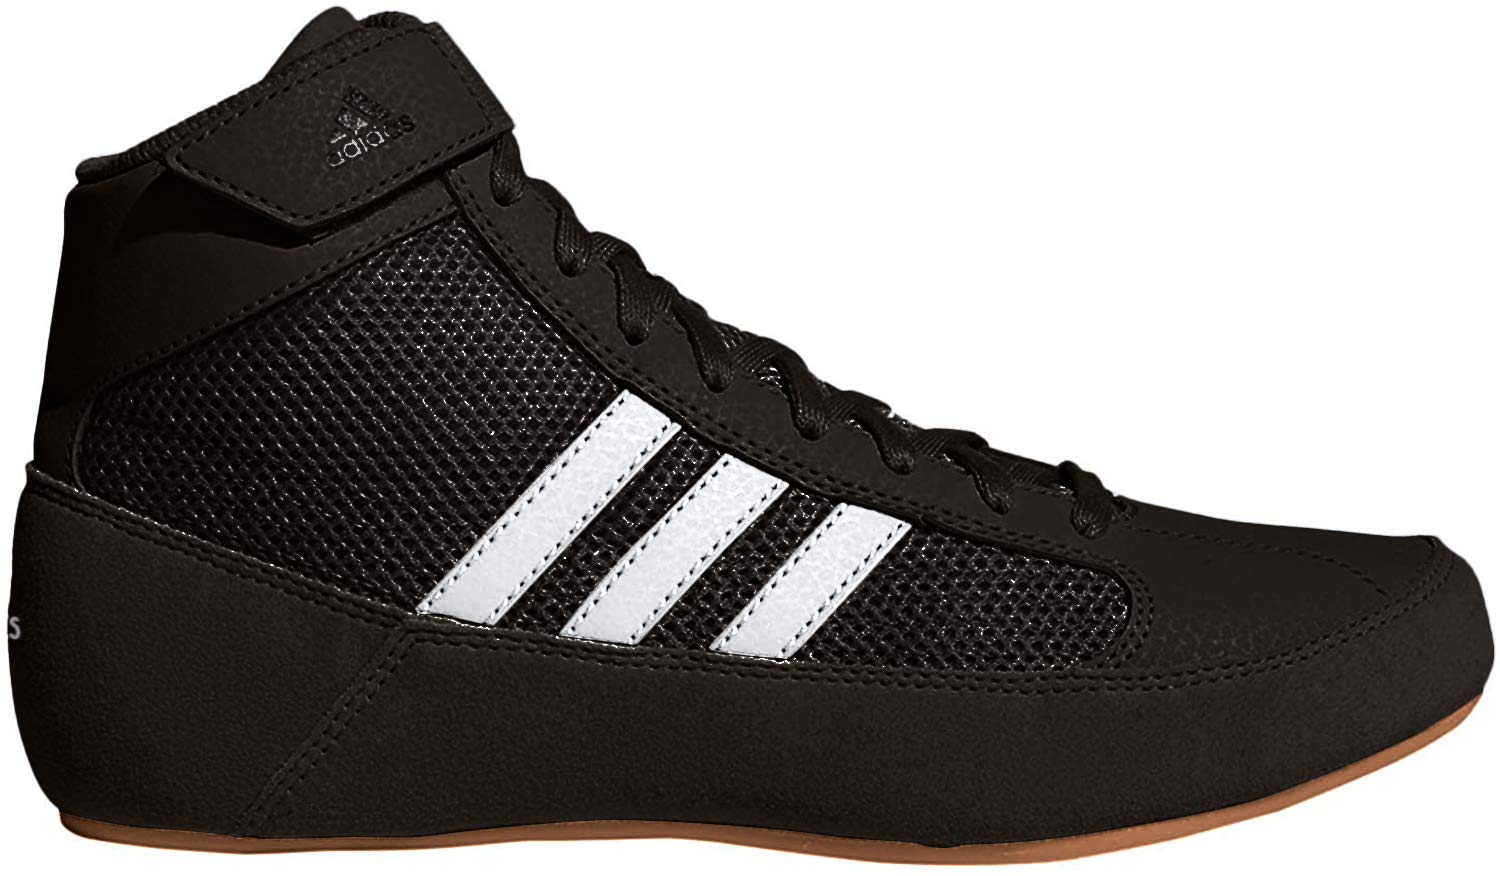 adidas Men's HVC Wrestling Shoe, Black/White, 13.5